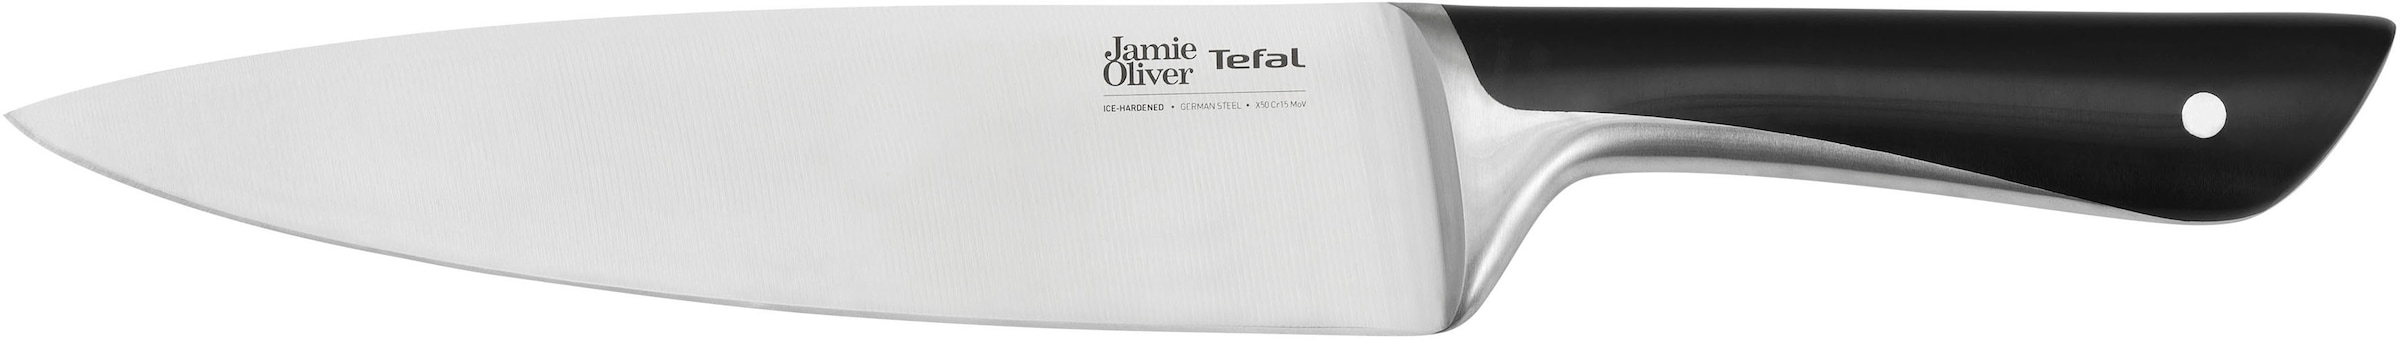 Tefal Pfannen-Set »Jamie Oliver Cook Smart«, Edelstahl 18/10, (Set, je 1 Pfanne 24 und 28 cm, 1 Kochmesser), stilvolle Edelstahl-Pfannen, inkl. Kochmesser, Rezeptbuch